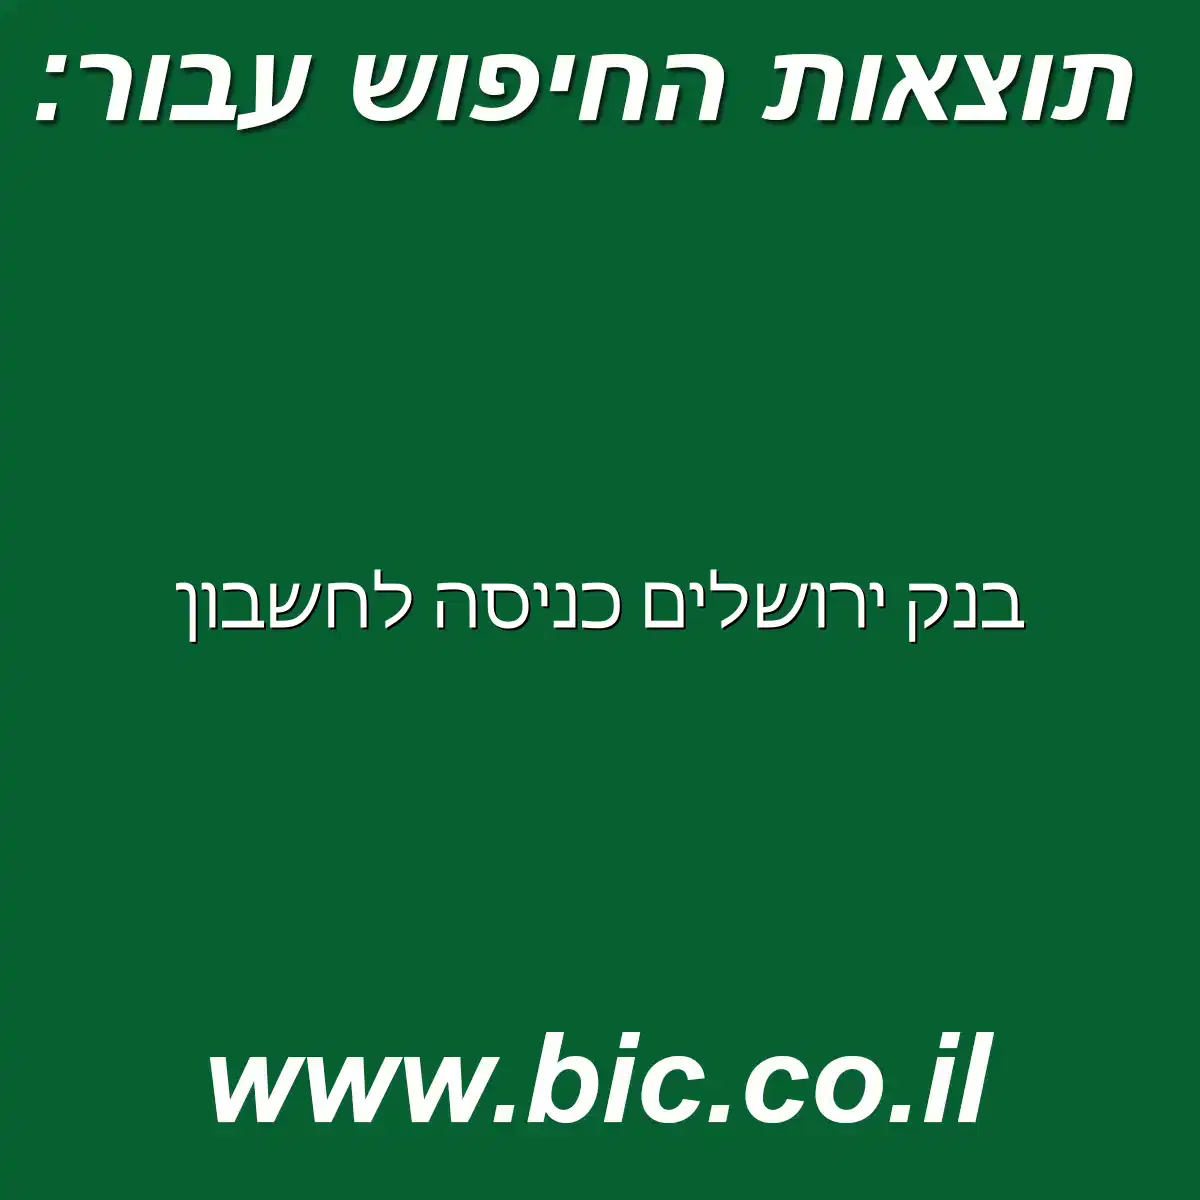 בנק ירושלים כניסה לחשבון